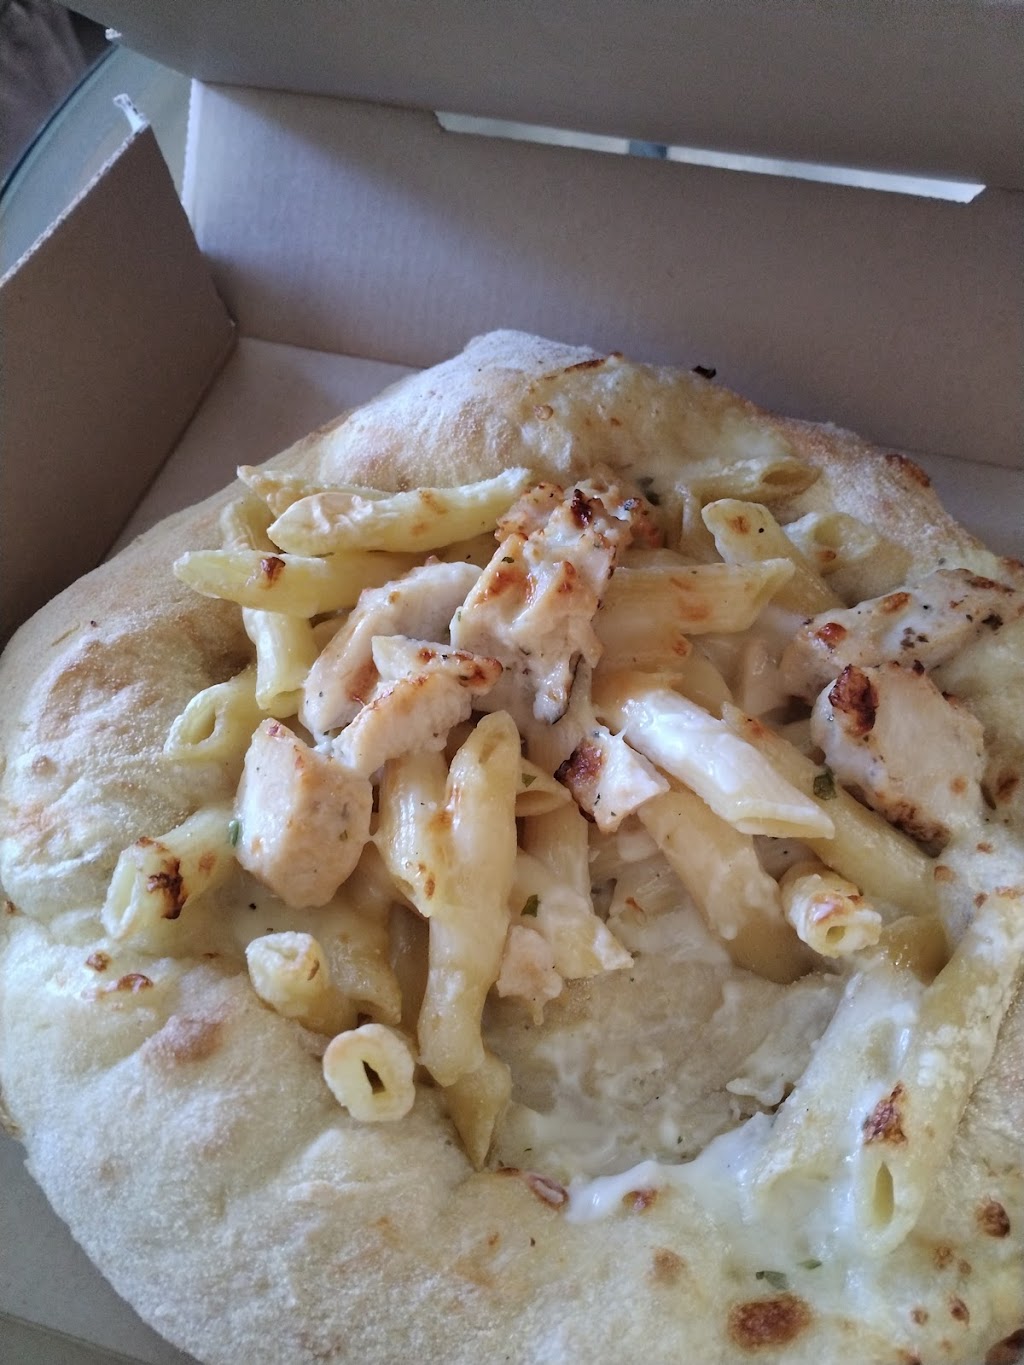 Dominos Pizza | 1728 Marsh Rd, Wilmington, DE 19810 | Phone: (302) 479-5900